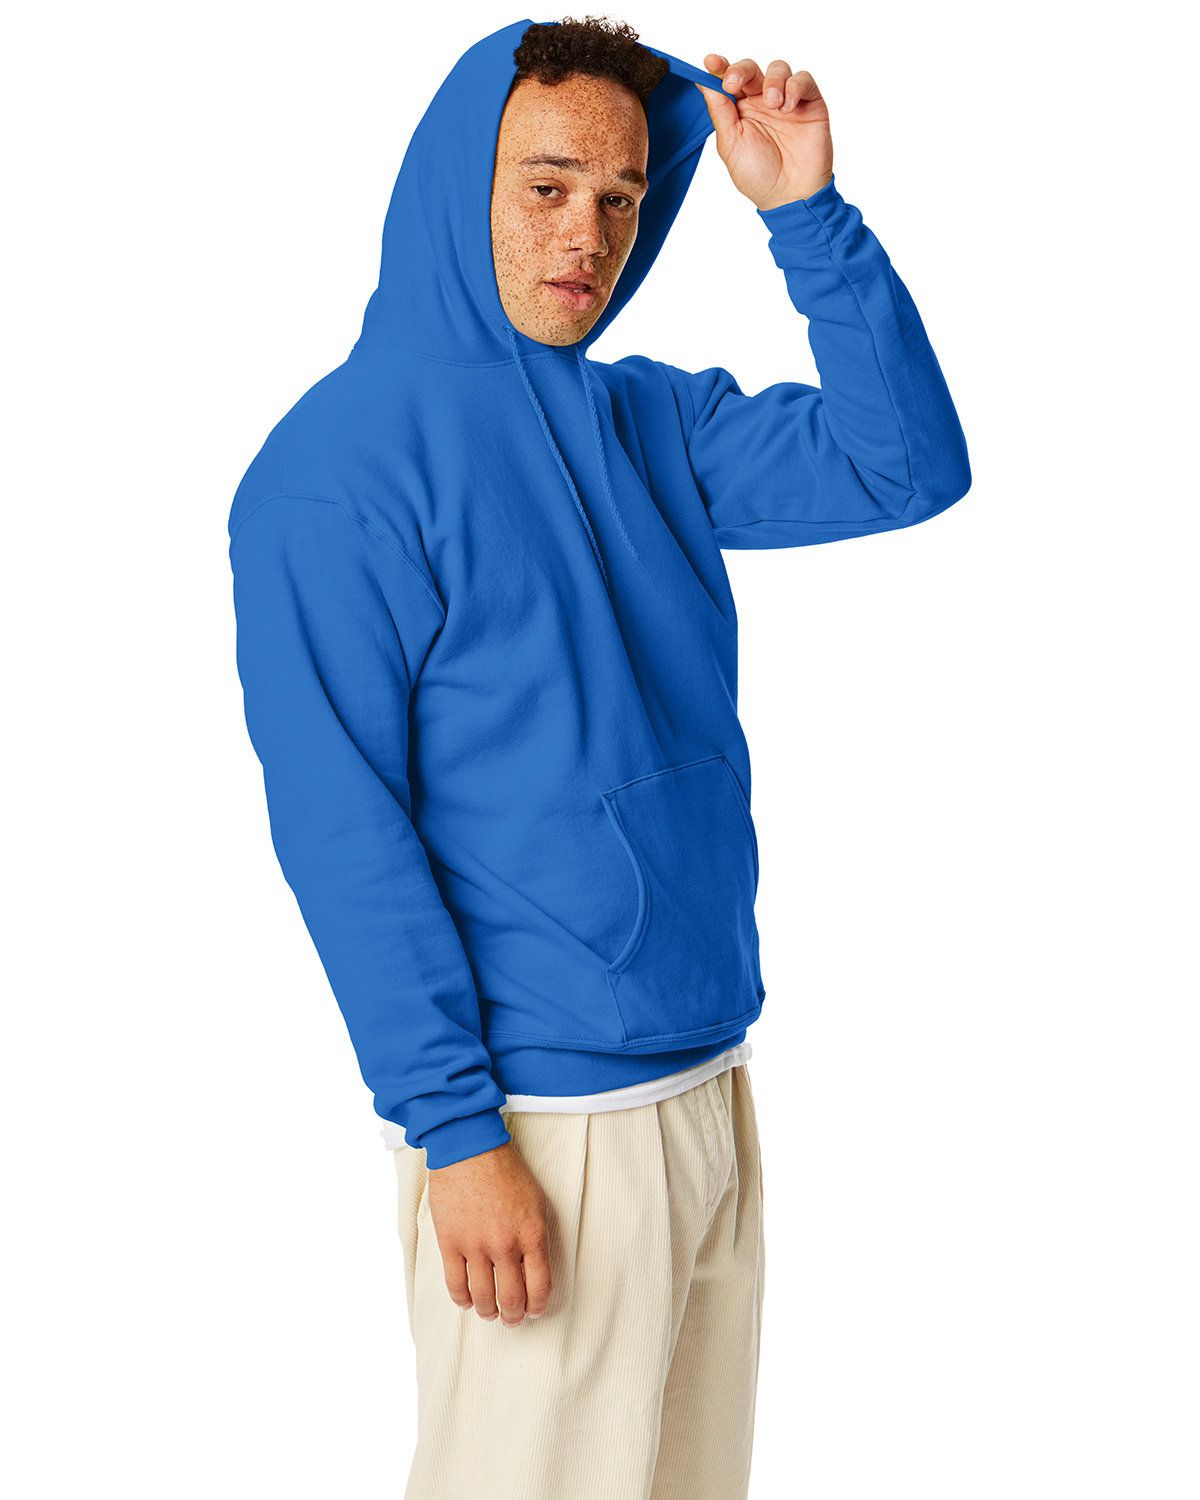 'Hanes P170 Comfortblend & Pullover Hoodie Sweatshirt'